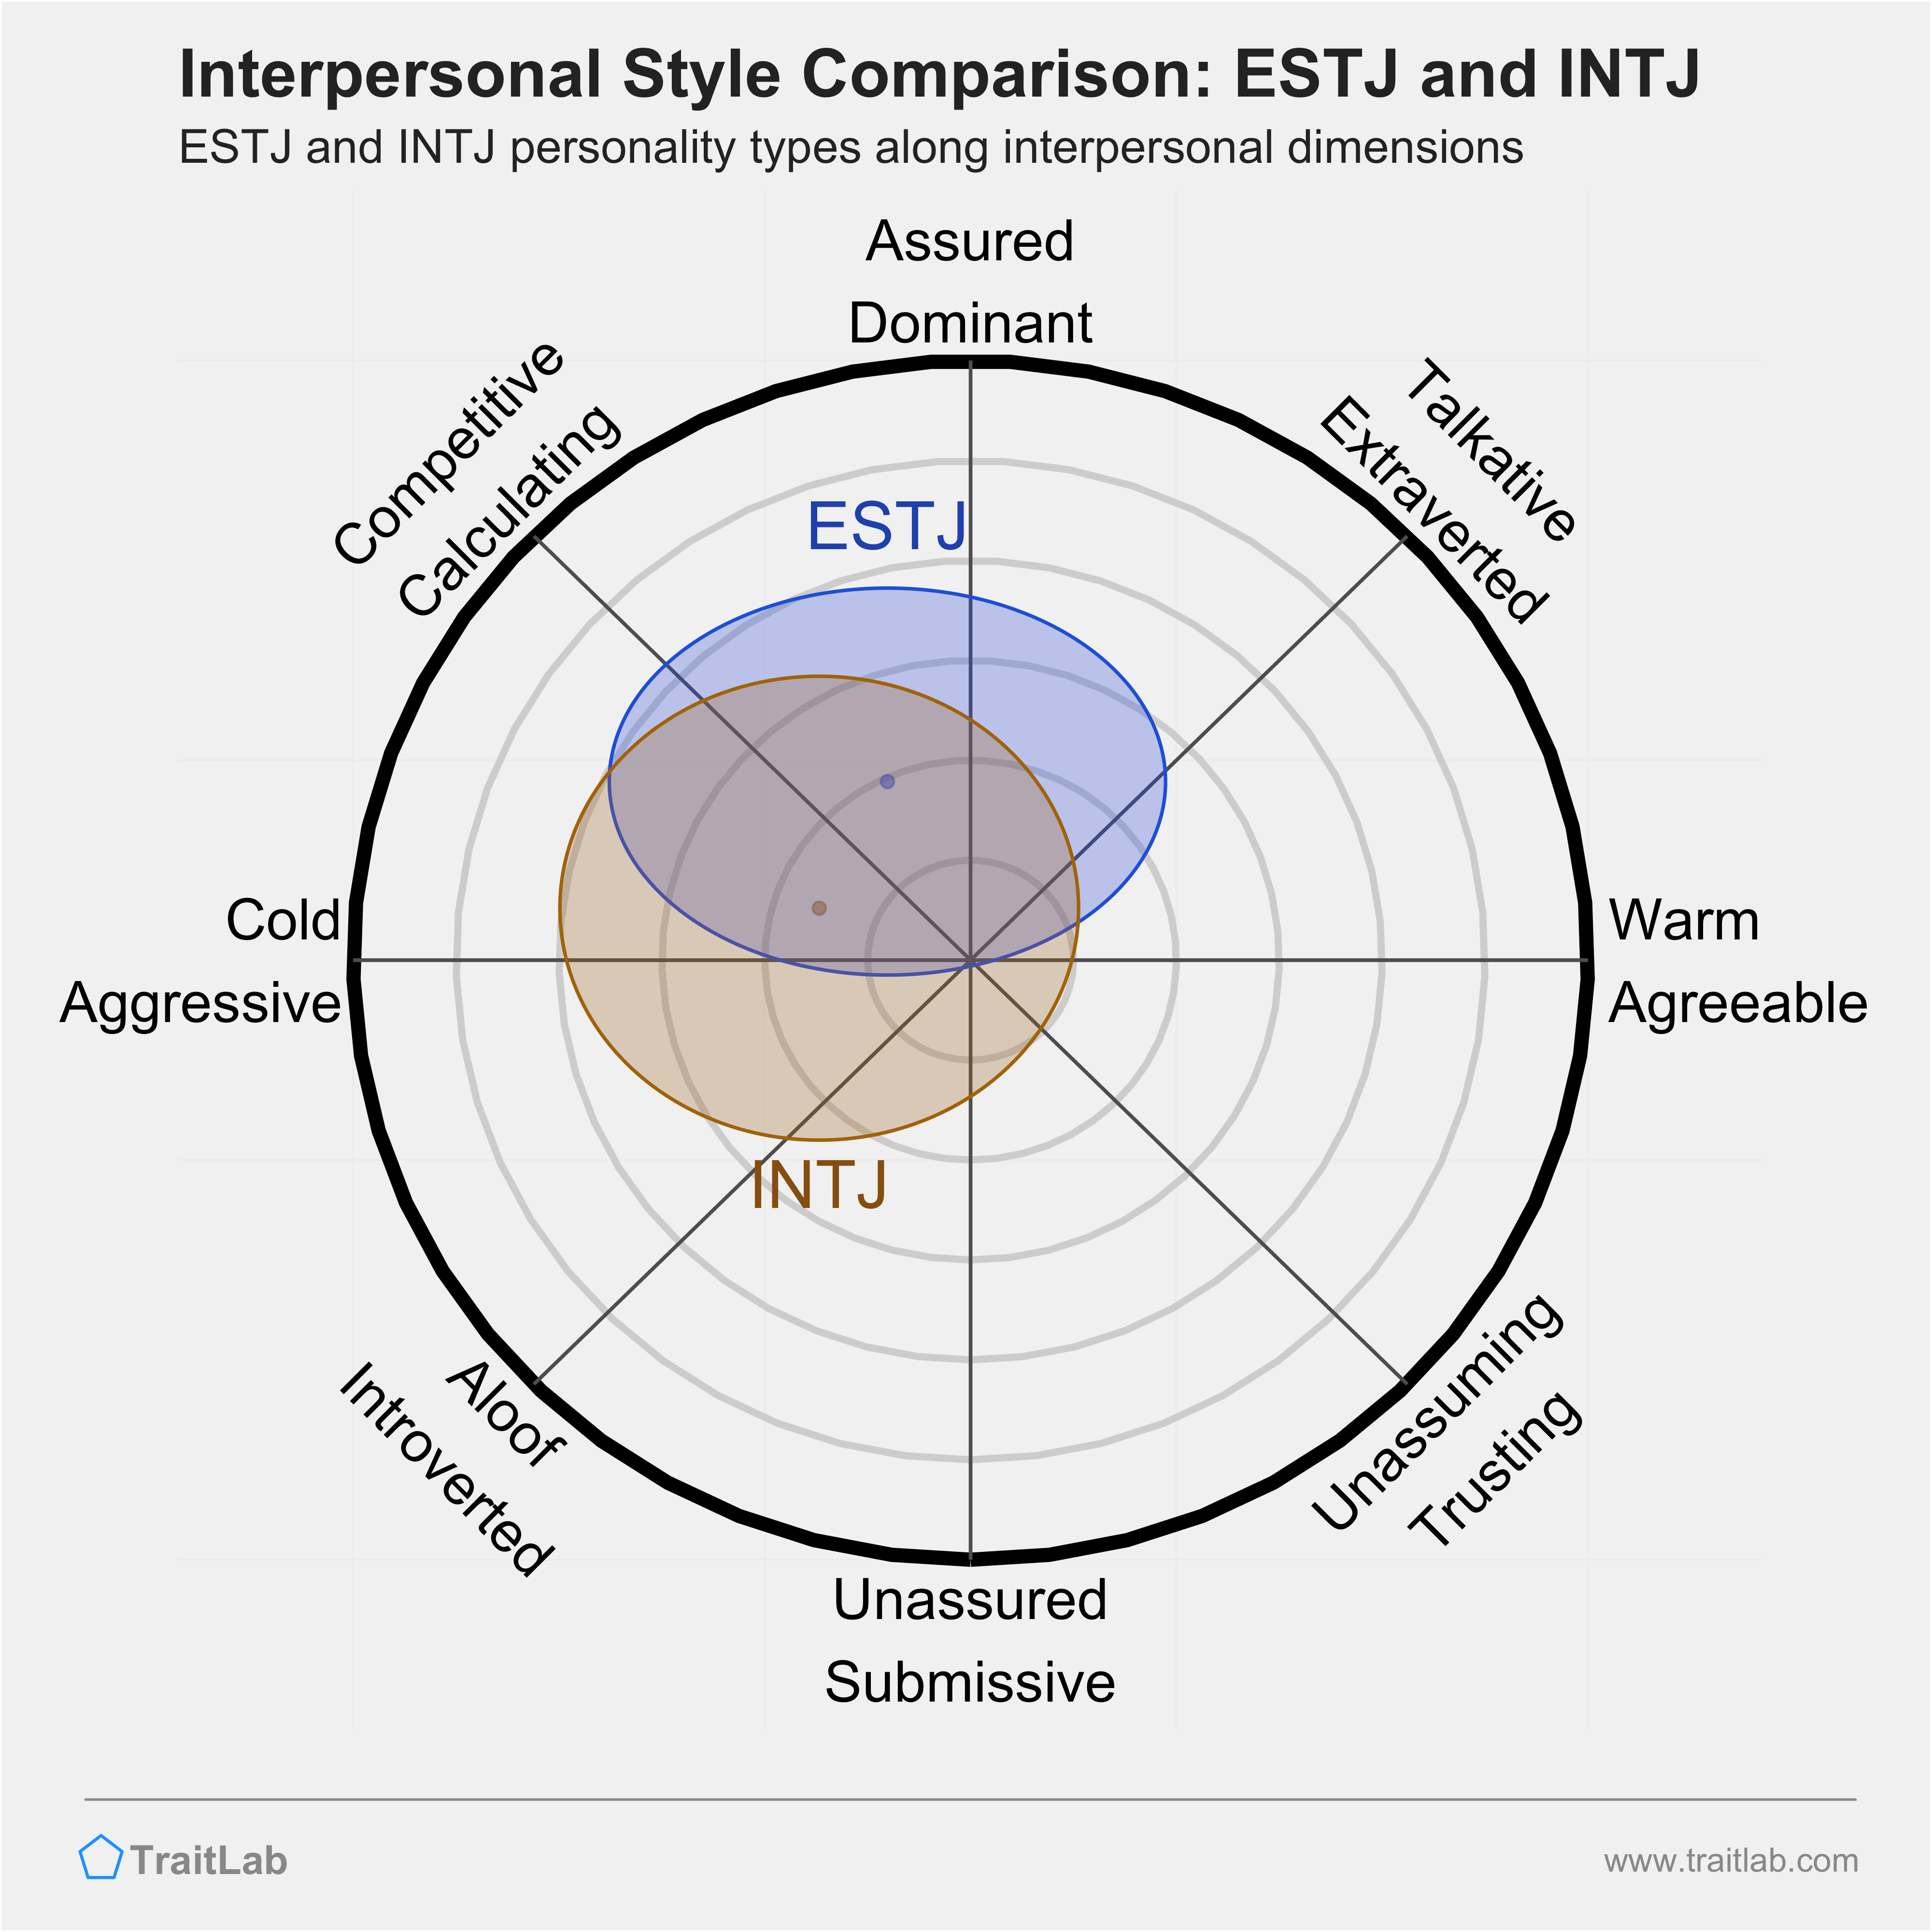 ESTJ and INTJ comparison across interpersonal dimensions